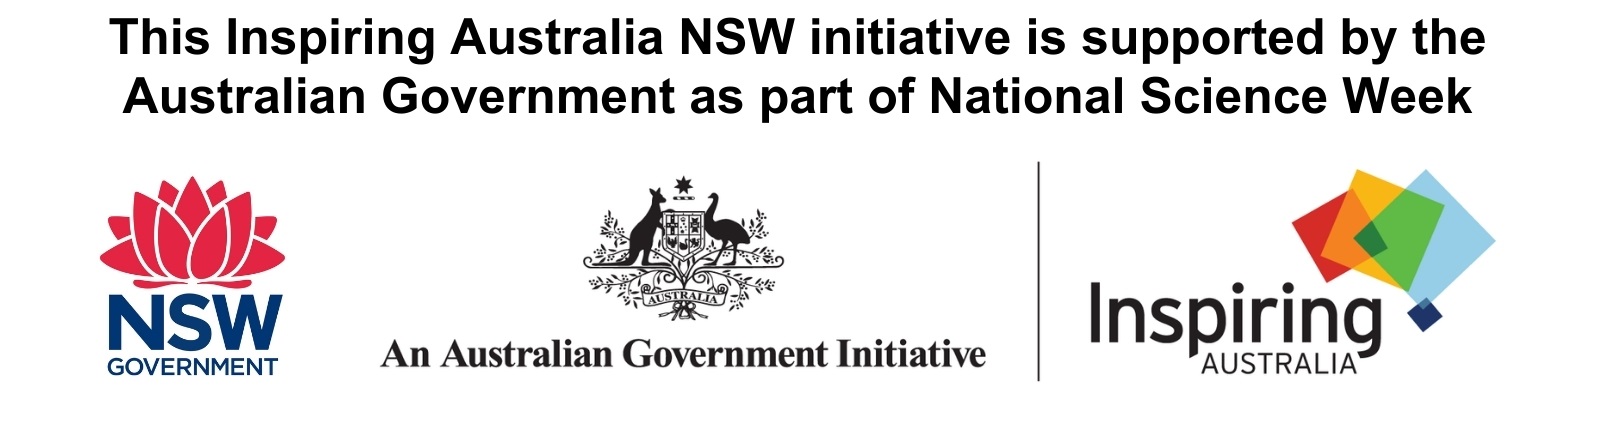 IA NSW Logo lock up landscape large.jpg